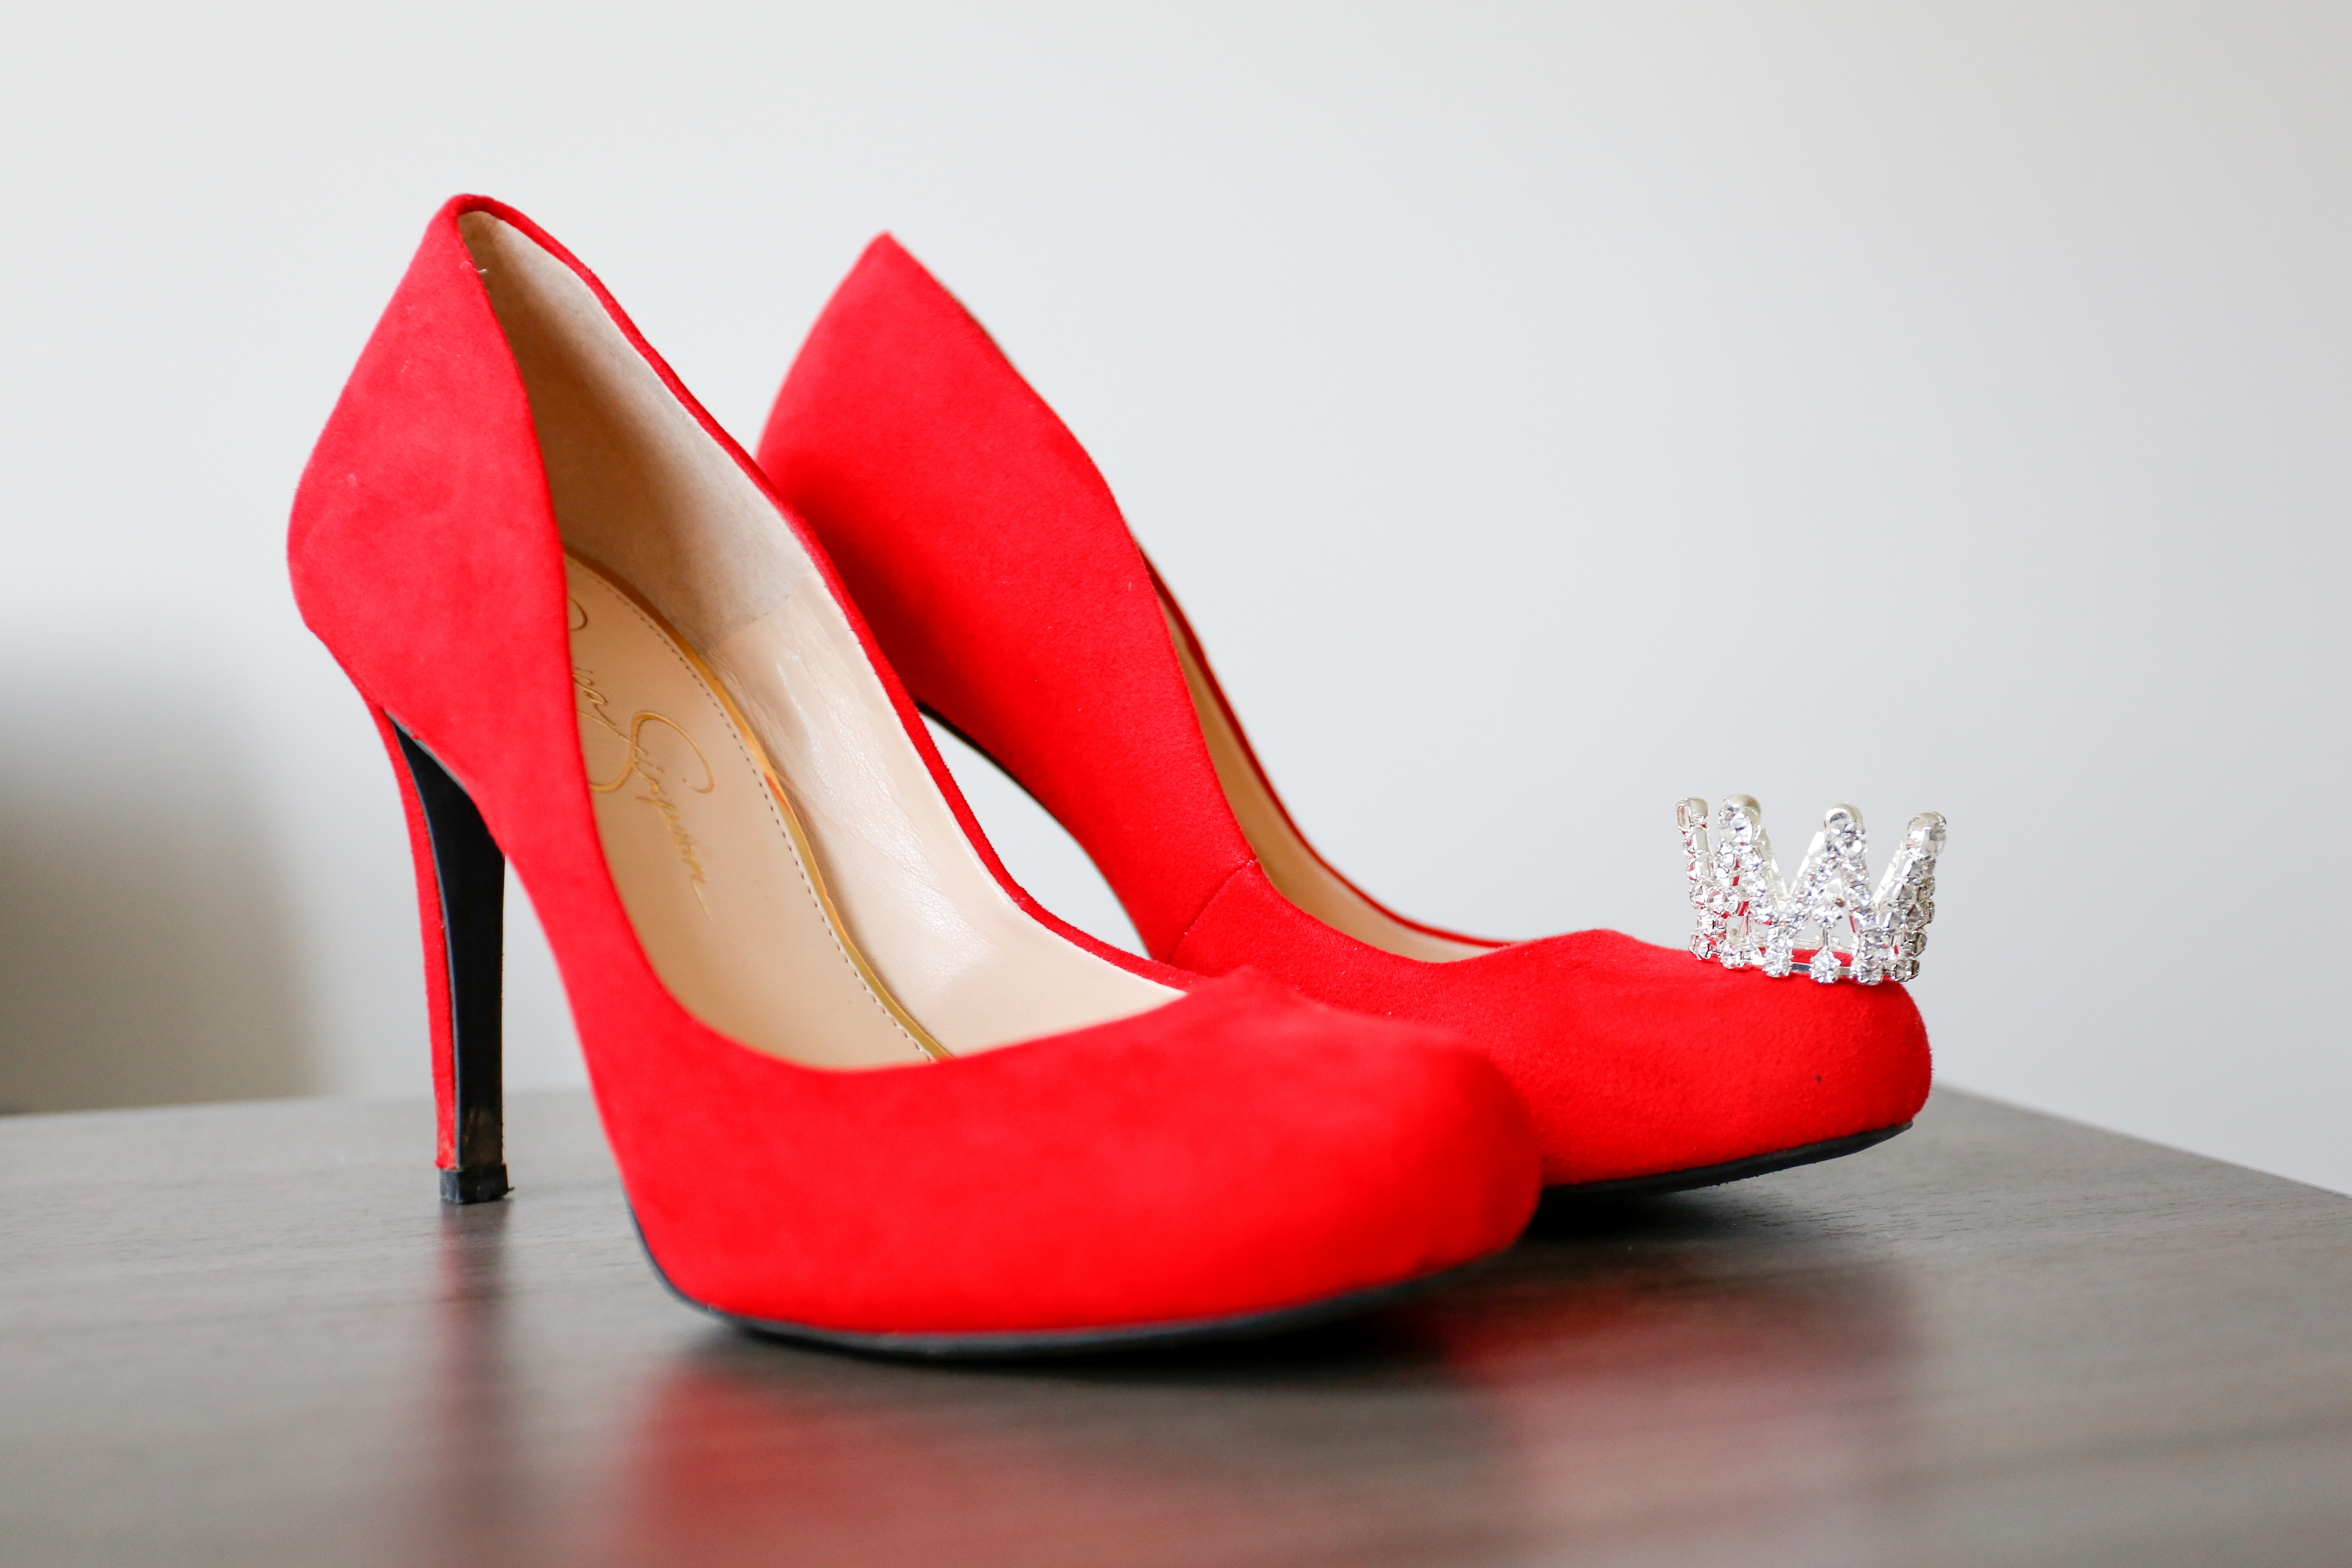 Red Heels For Women, Red High Heels